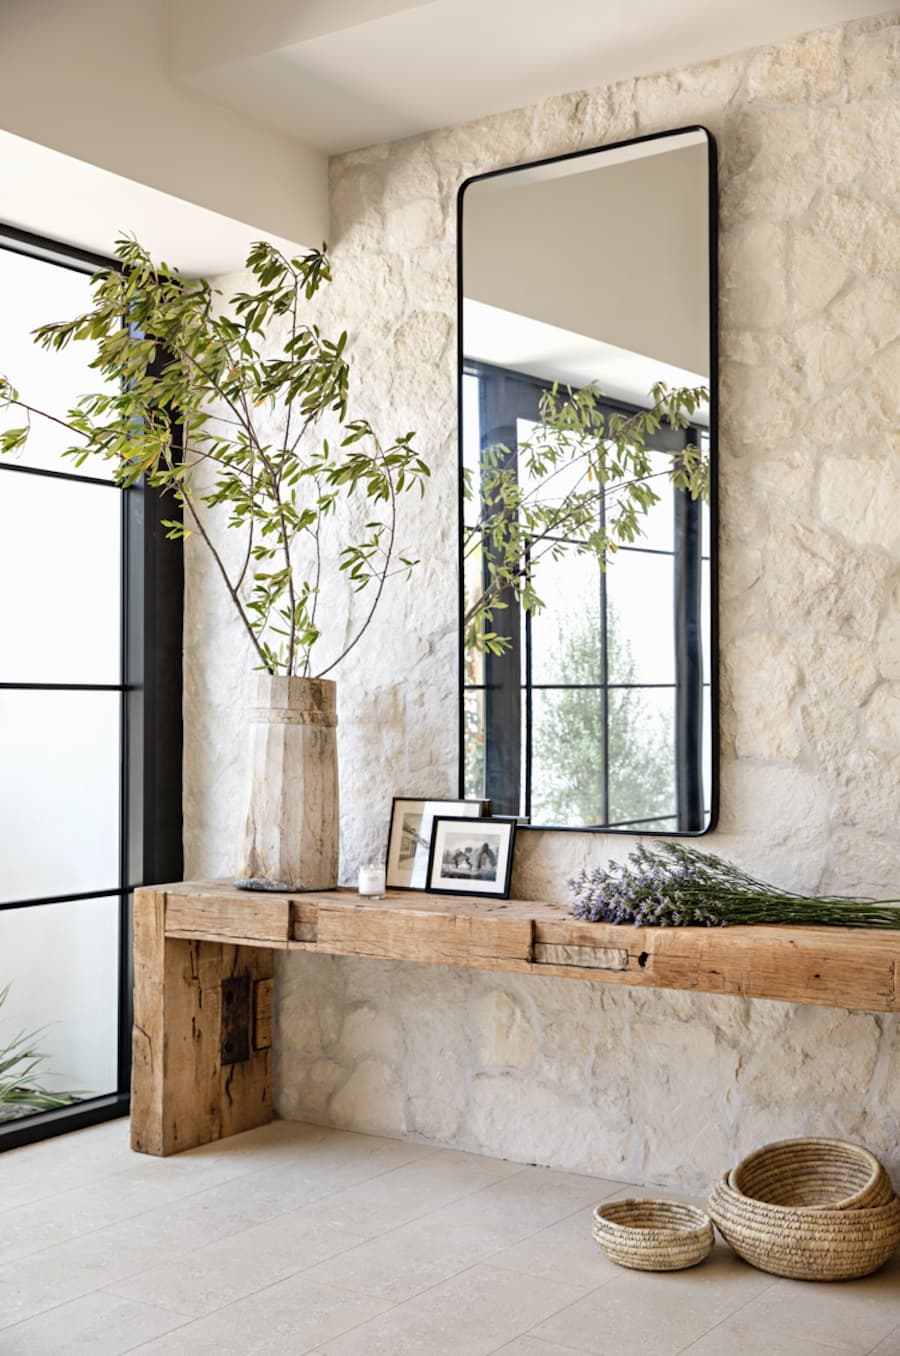 Entrada de una casa con un muro de piedra con un arrimo de madera rústica. Sobre él hay una planta, cuadros con fotos y flores. En el muro hay un espejo rectangular con marco negro.